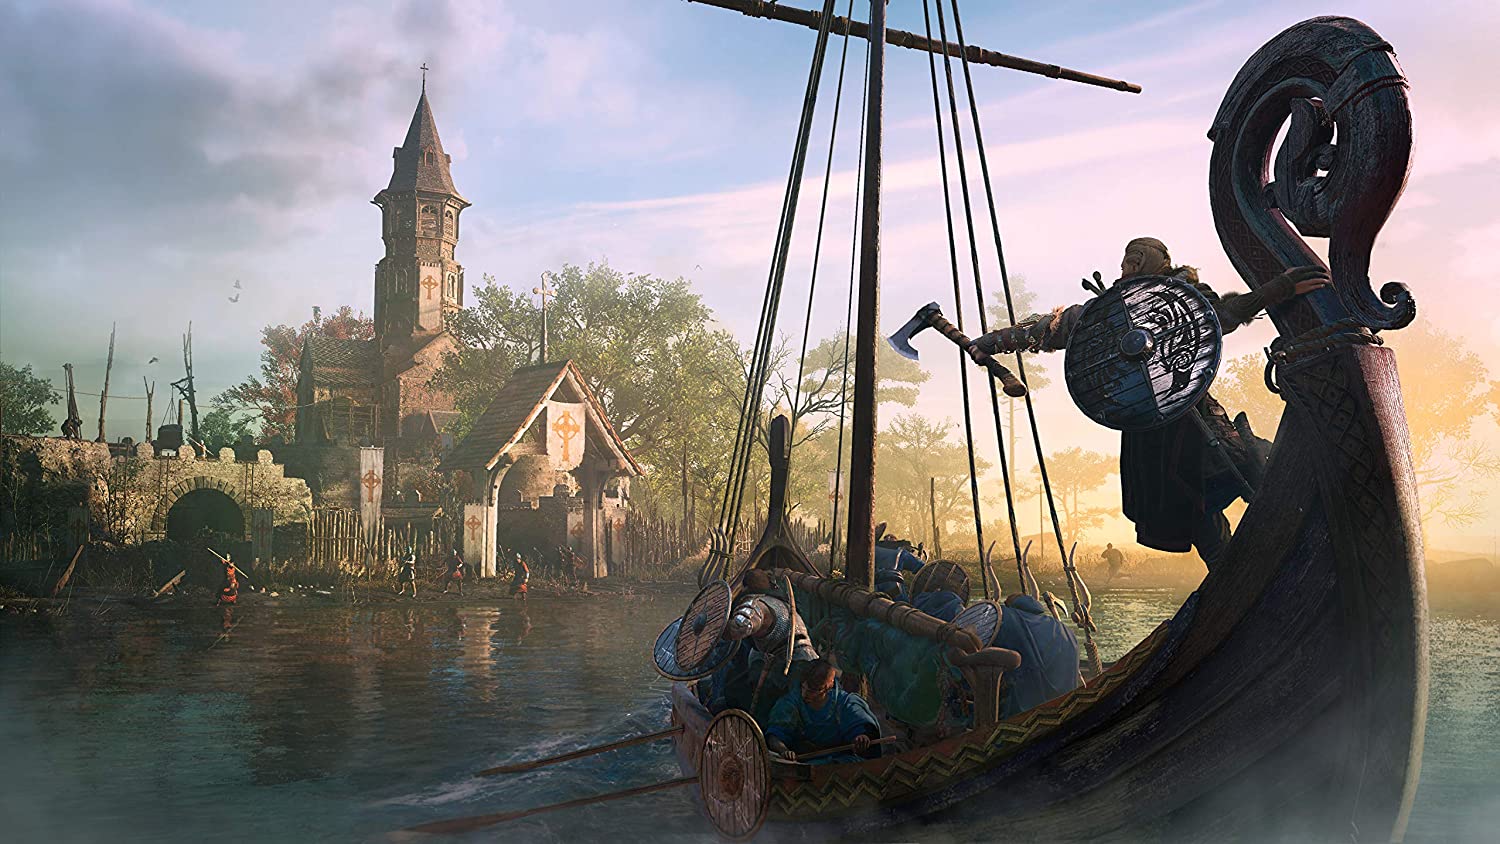 Скриншоты Assassin's Creed Вальгалла Ragnarok Edition [Valhalla][PS5, русская версия] интернет-магазин Омегагейм